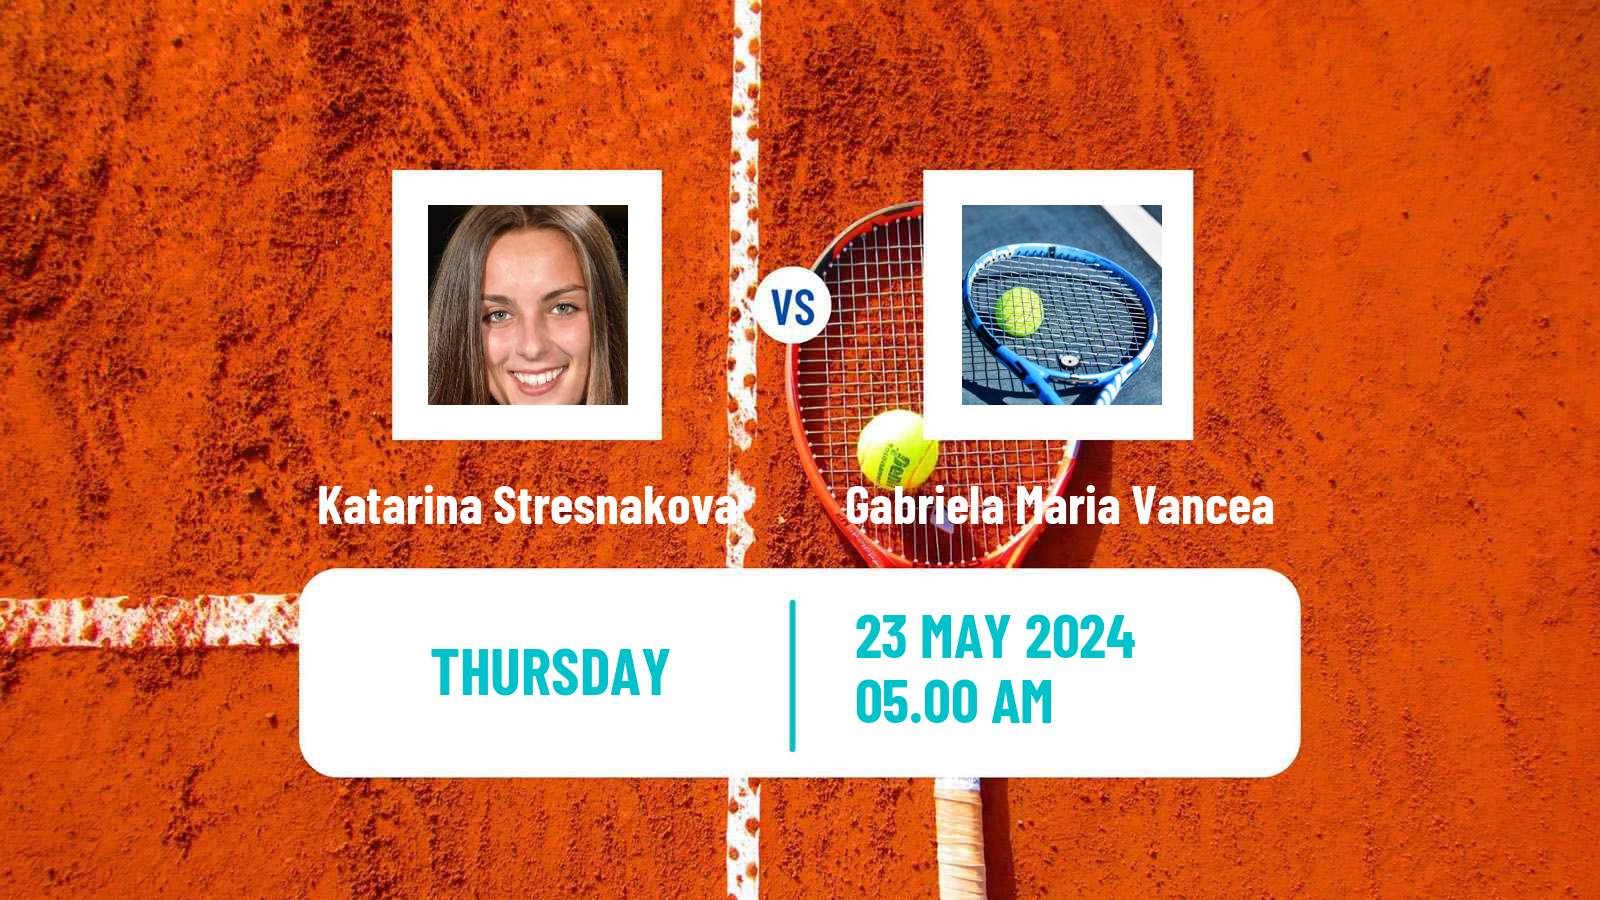 Tennis ITF W15 Estepona Women Katarina Stresnakova - Gabriela Maria Vancea